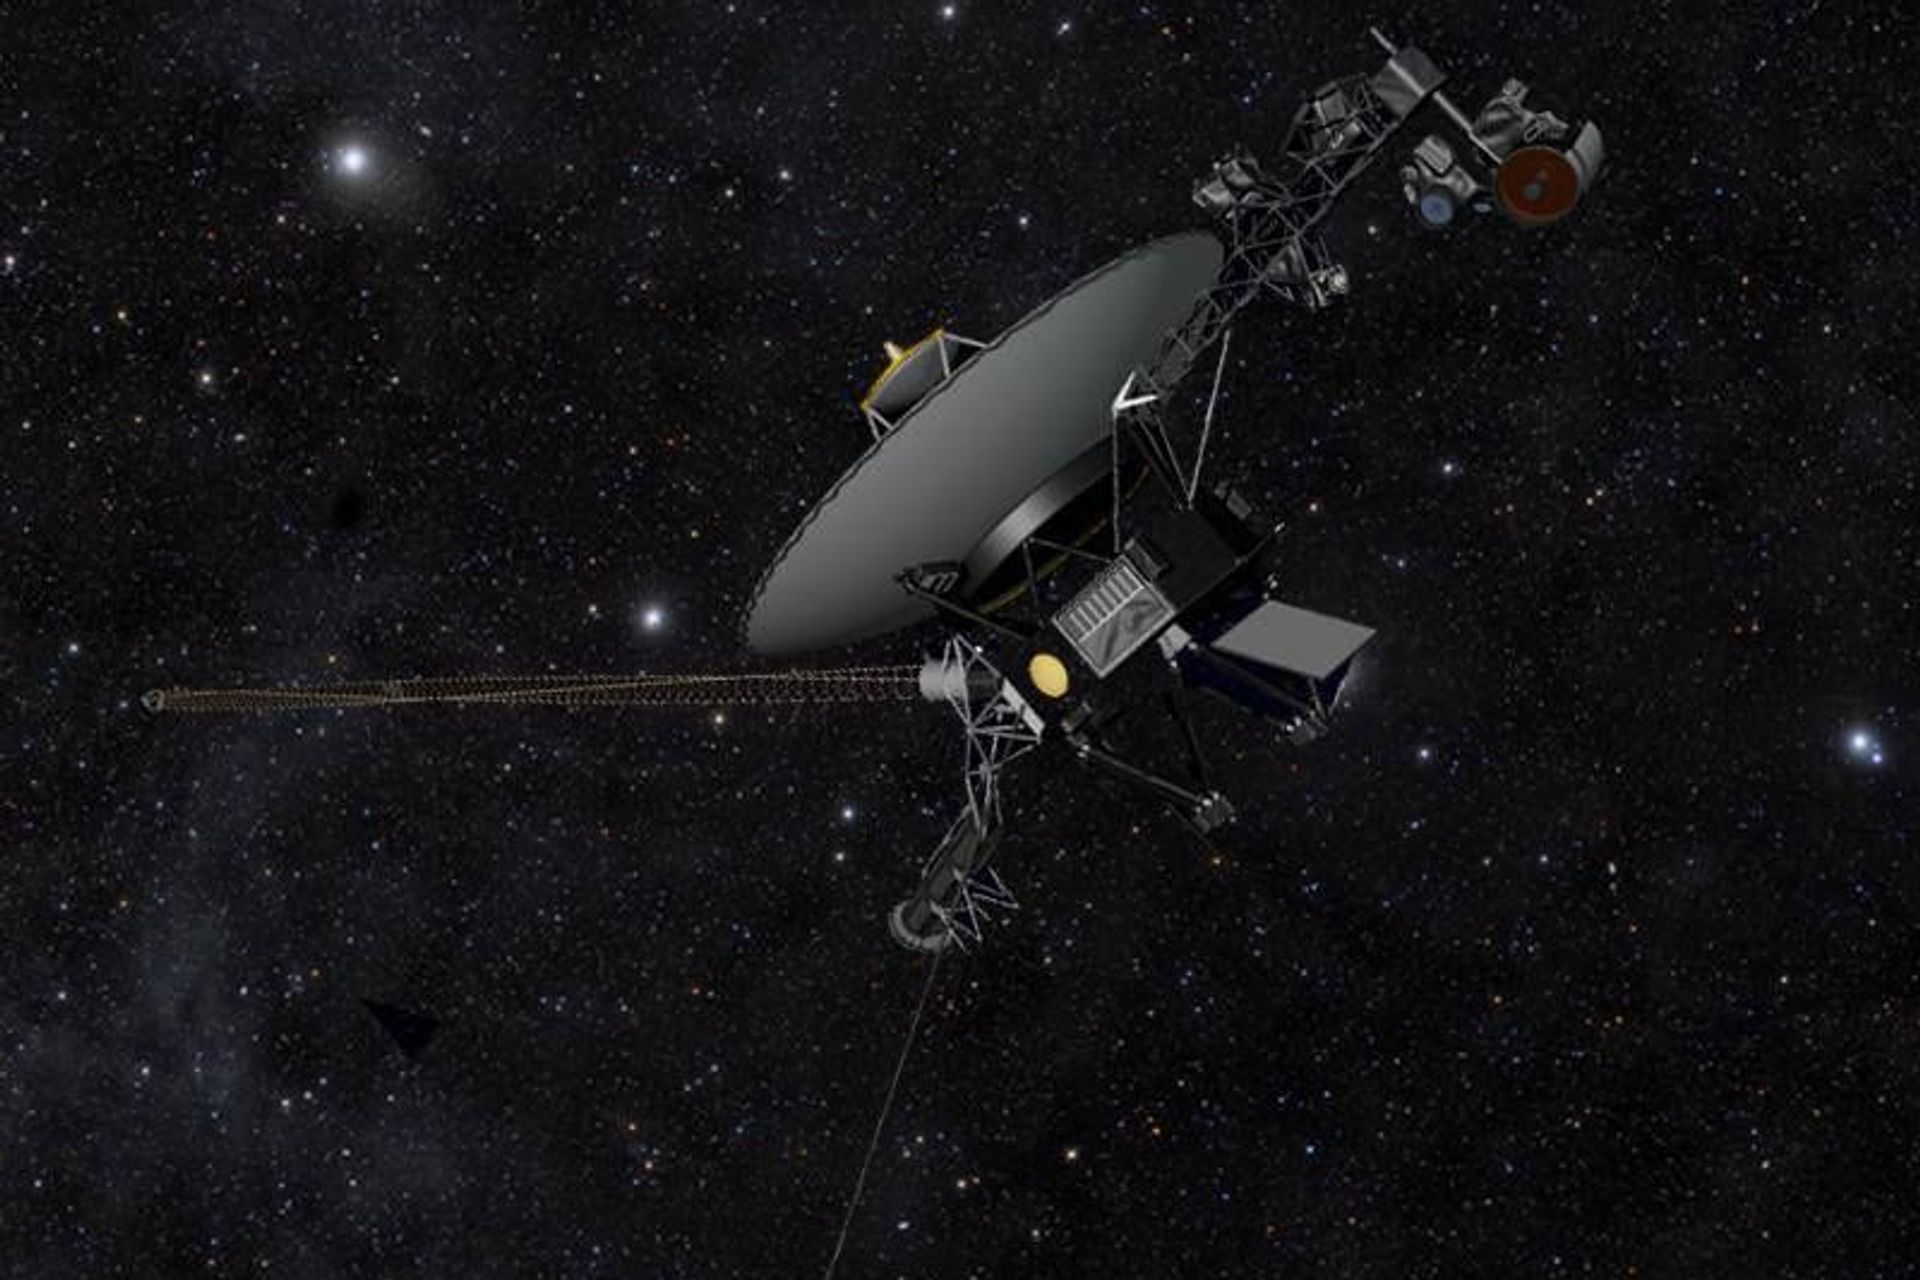 La sonda spaziale Voyager 1 in missione di ricerca dal 1977 per la NASA